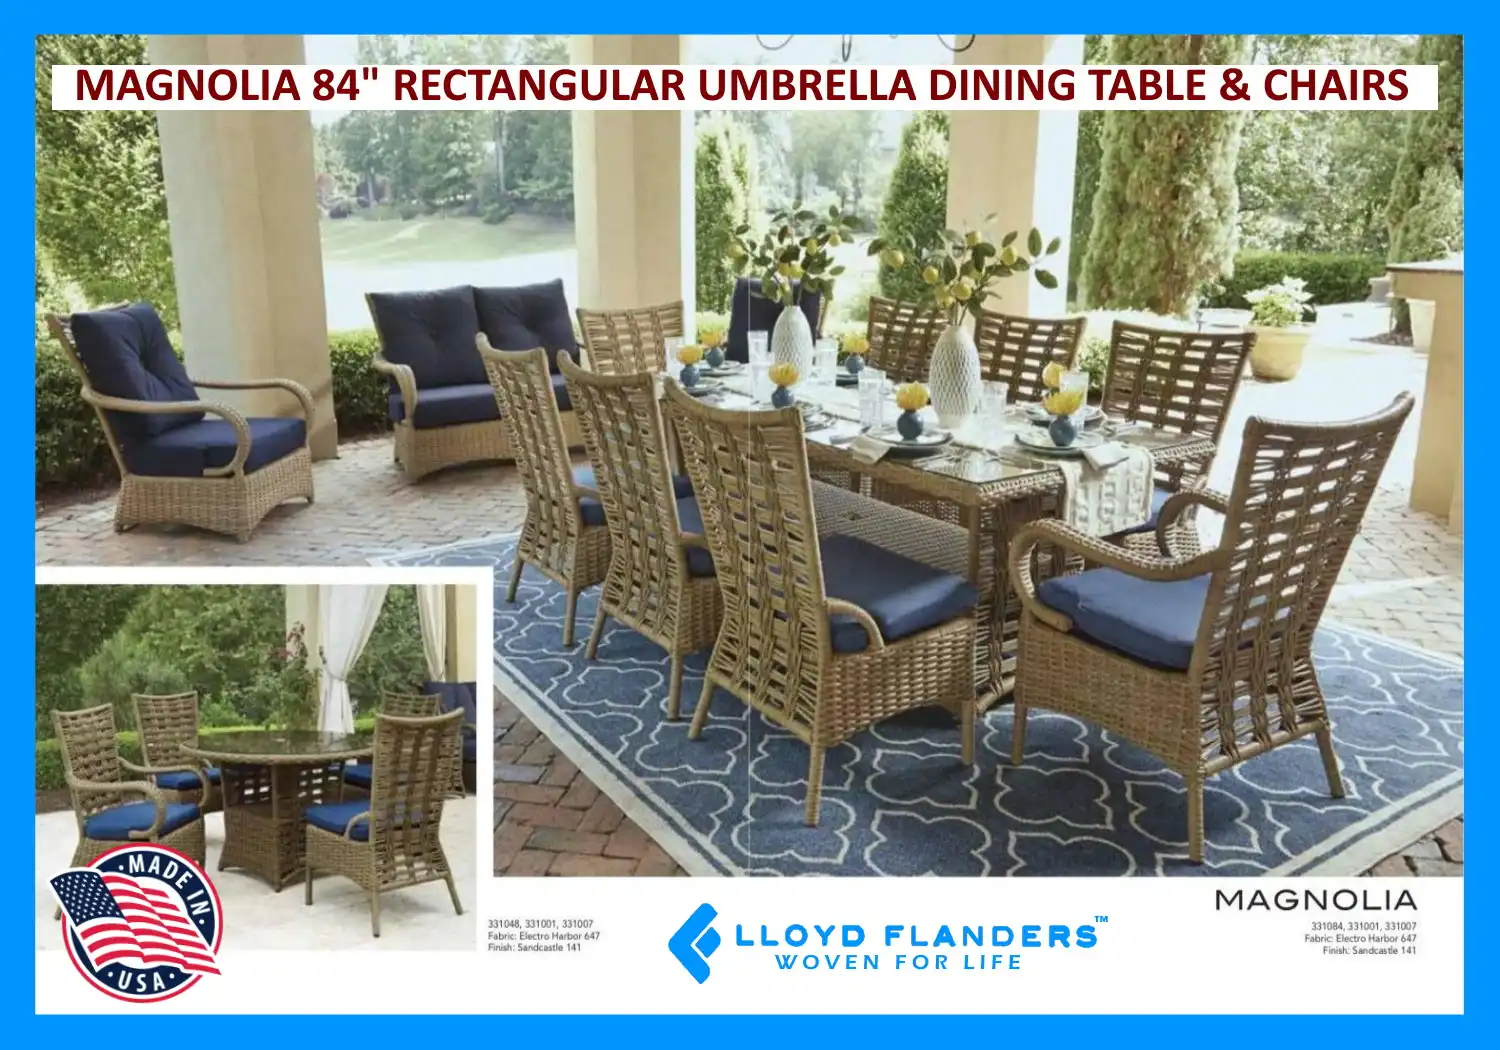 MAGNOLIA 84" RECTANGULAR UMBRELLA DINING TABLE & CHAIRS